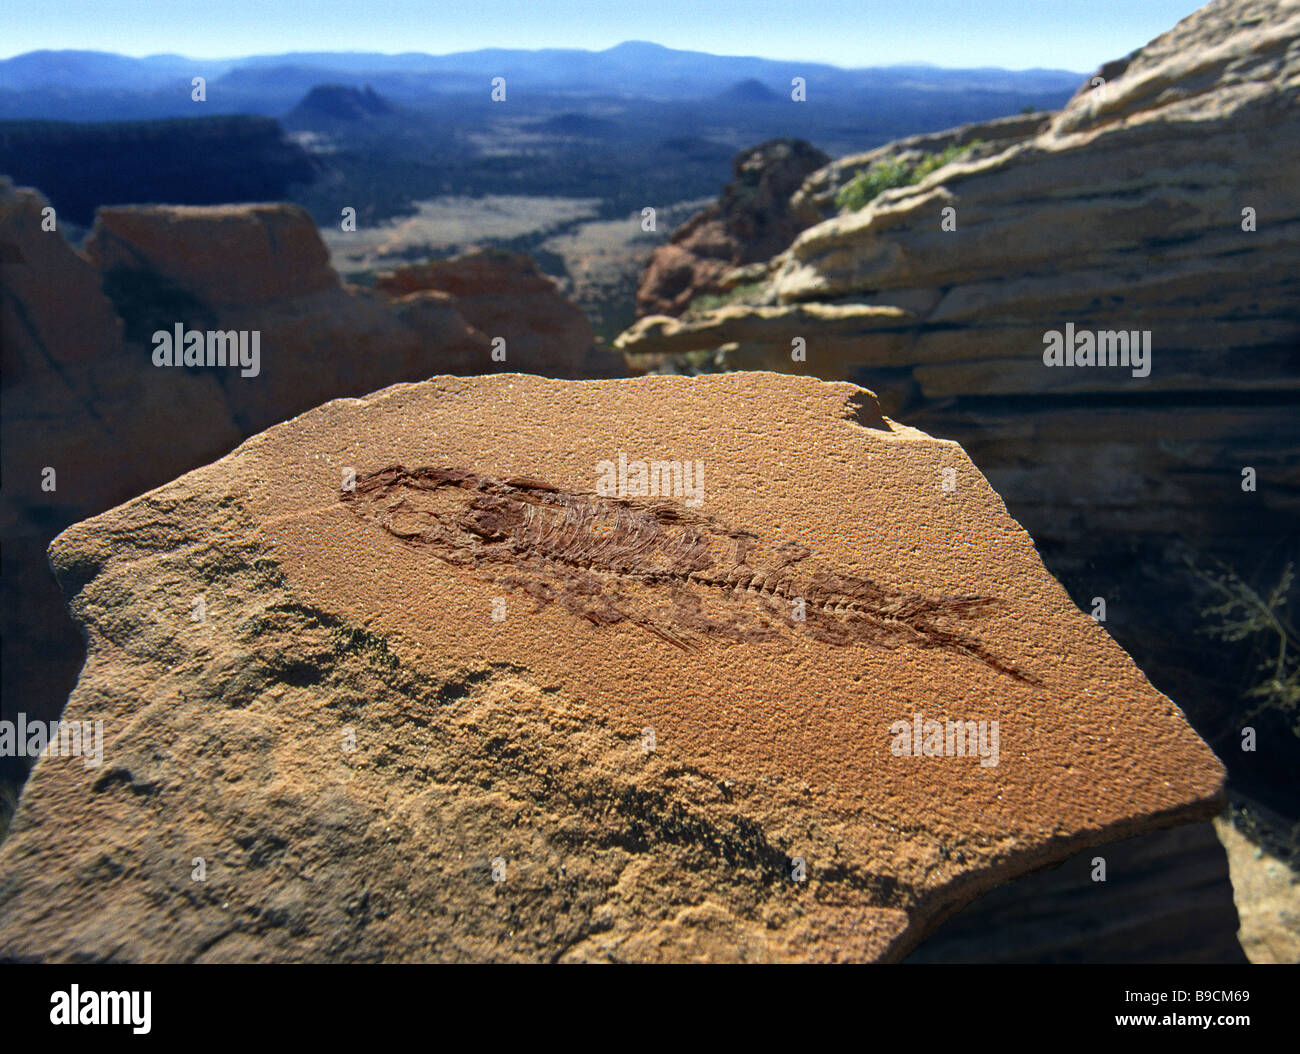 Fossil eine kleine 4 Fische gezeigt in einer Umgebung von geschichteten Felsen in Arizona Stockfoto